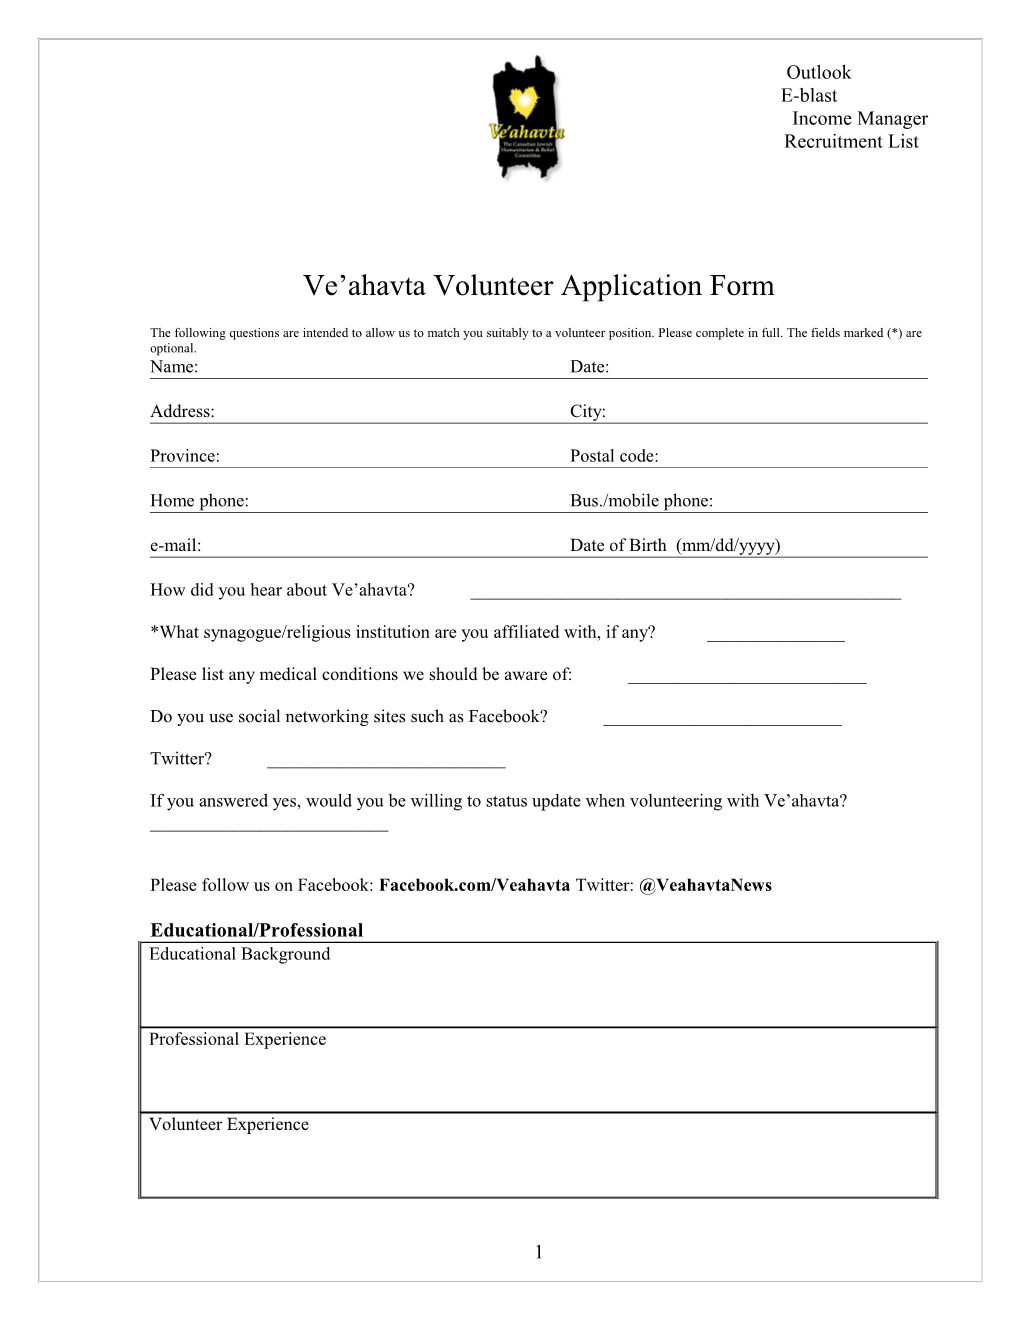 Ve Ahavta Volunteer Application Form